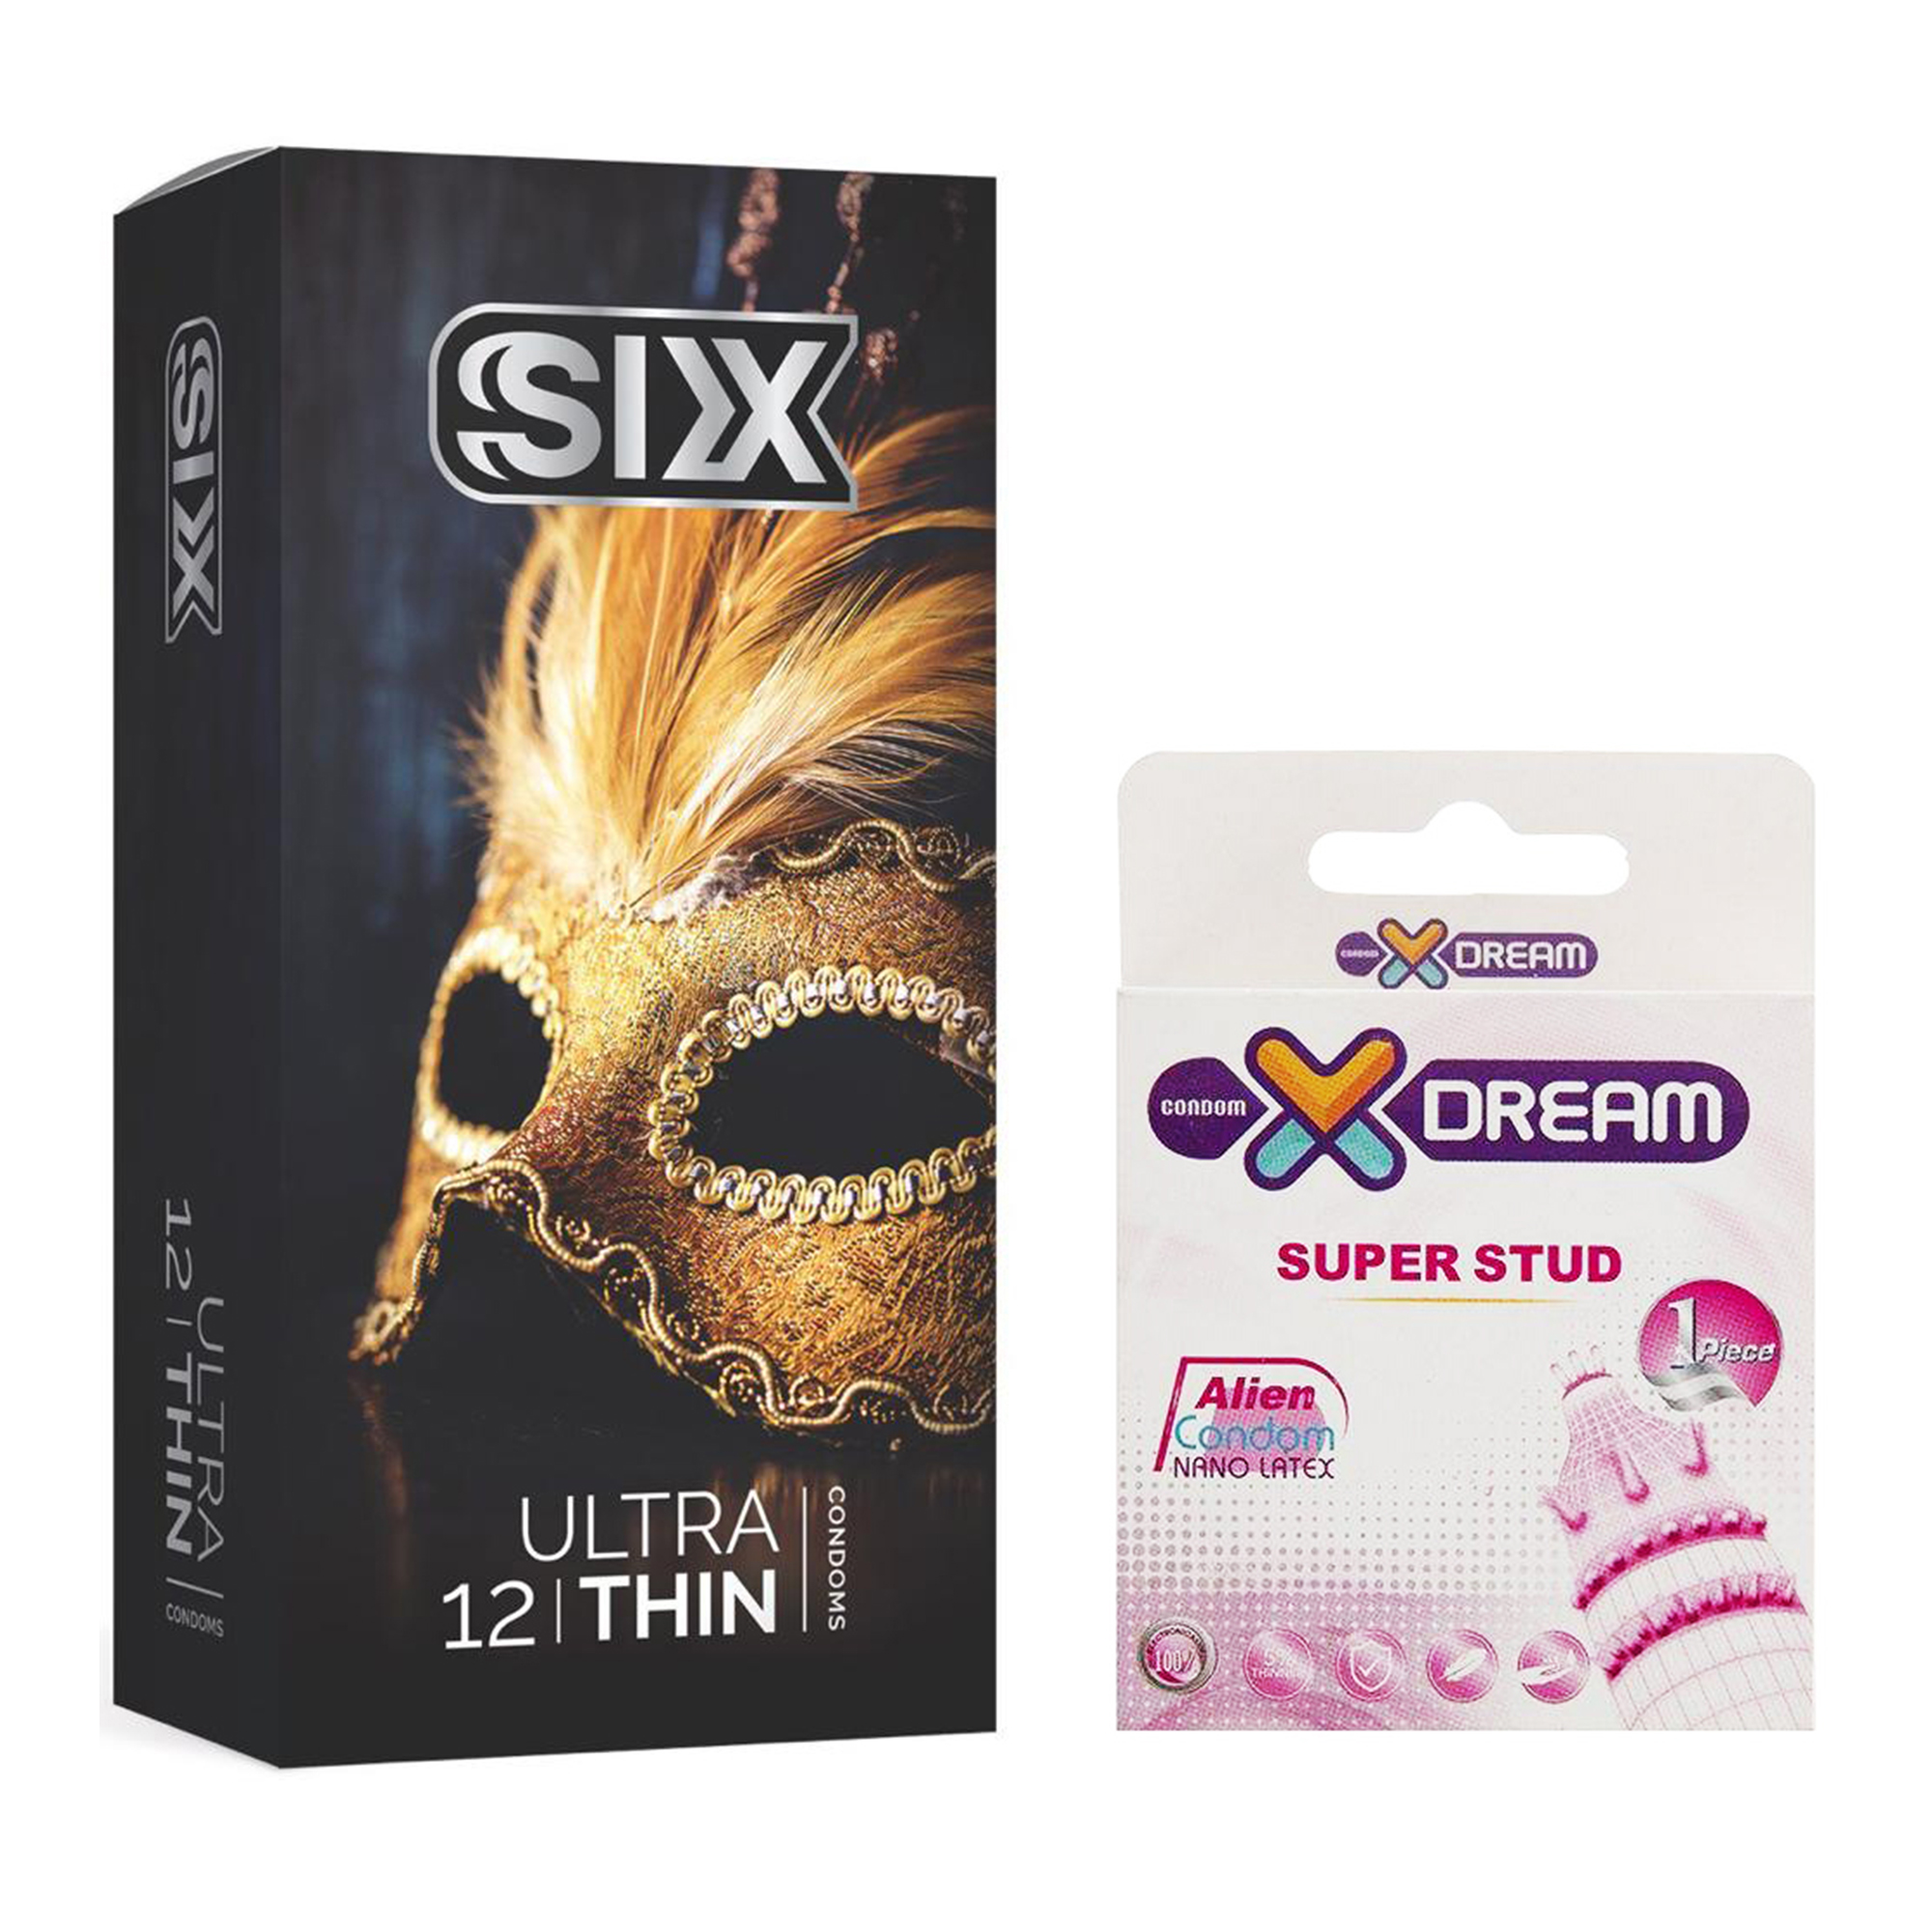 کاندوم سیکس مدل Ultra Thin بسته 12 عددی به همراه کاندوم ایکس دریم مدل Super Stud